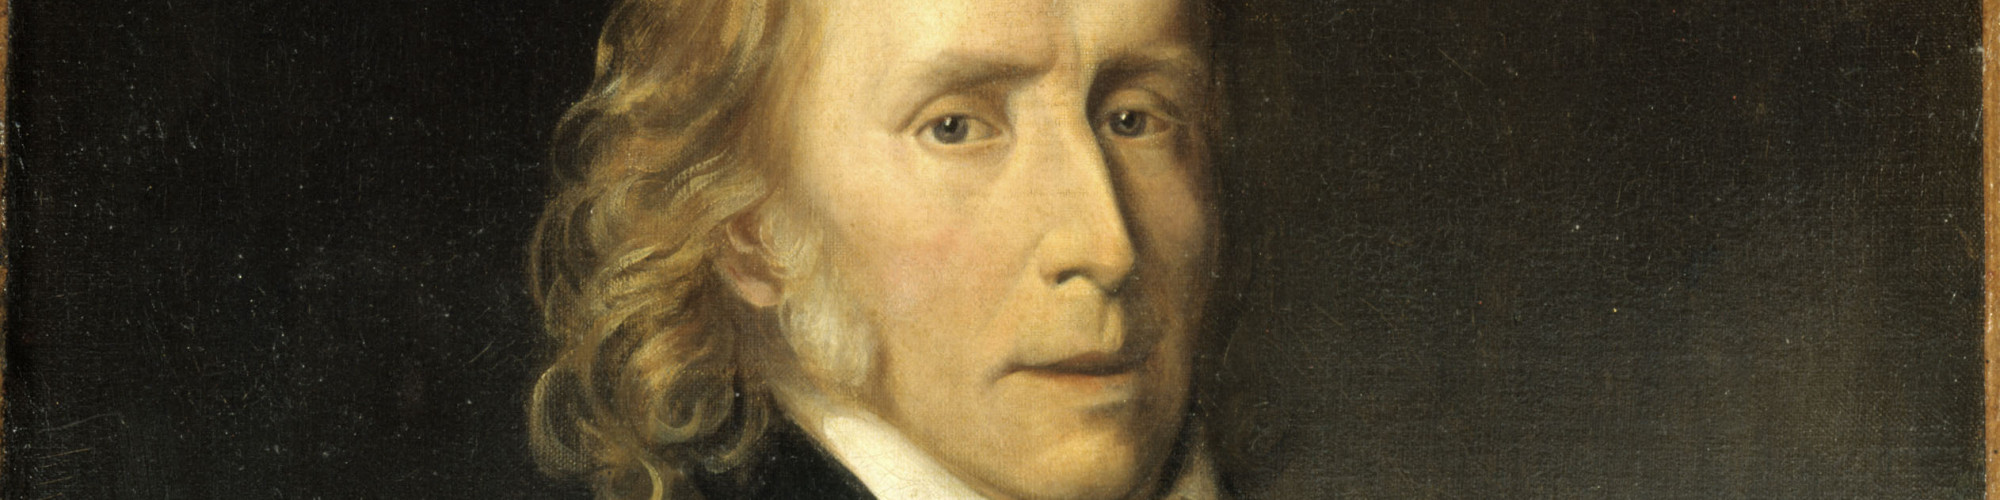 Portrait de Benjamin Constant (1767-1830), écrivain et homme politique